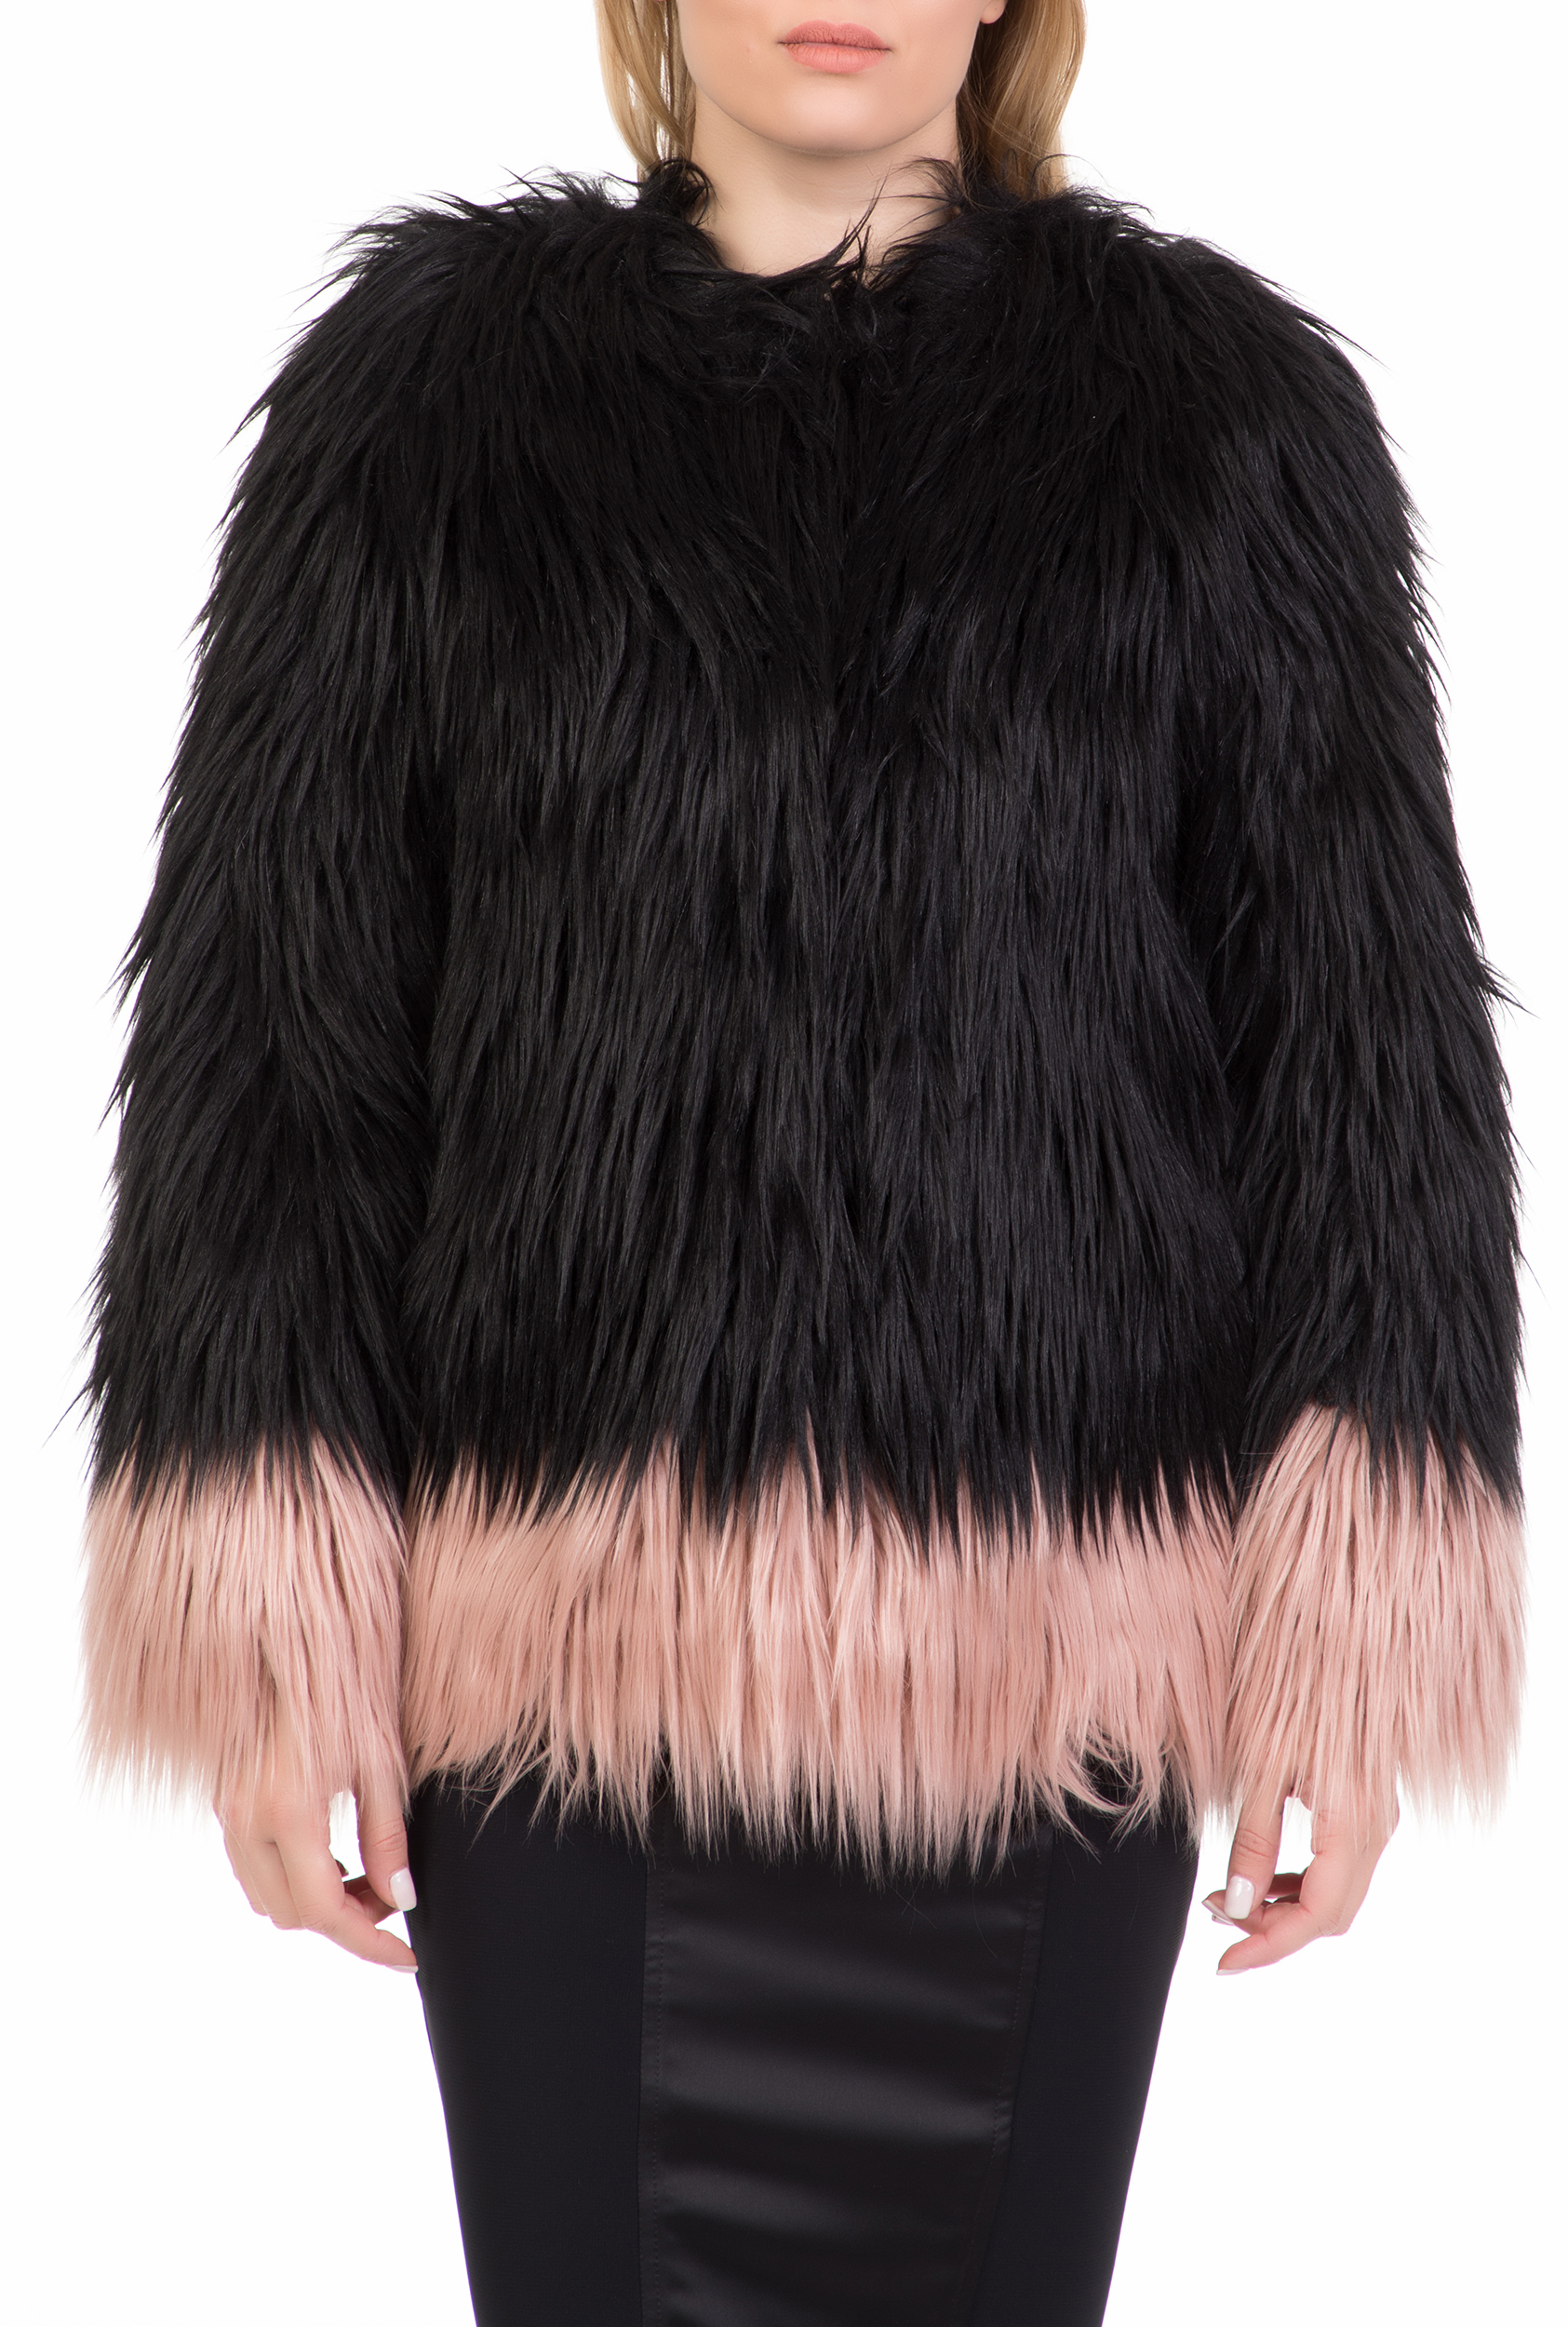 Γυναικεία/Ρούχα/Πανωφόρια/Τζάκετς NENETTE - Γυναικείο γούνινο jacket NENETTE μαύρο-ροζ